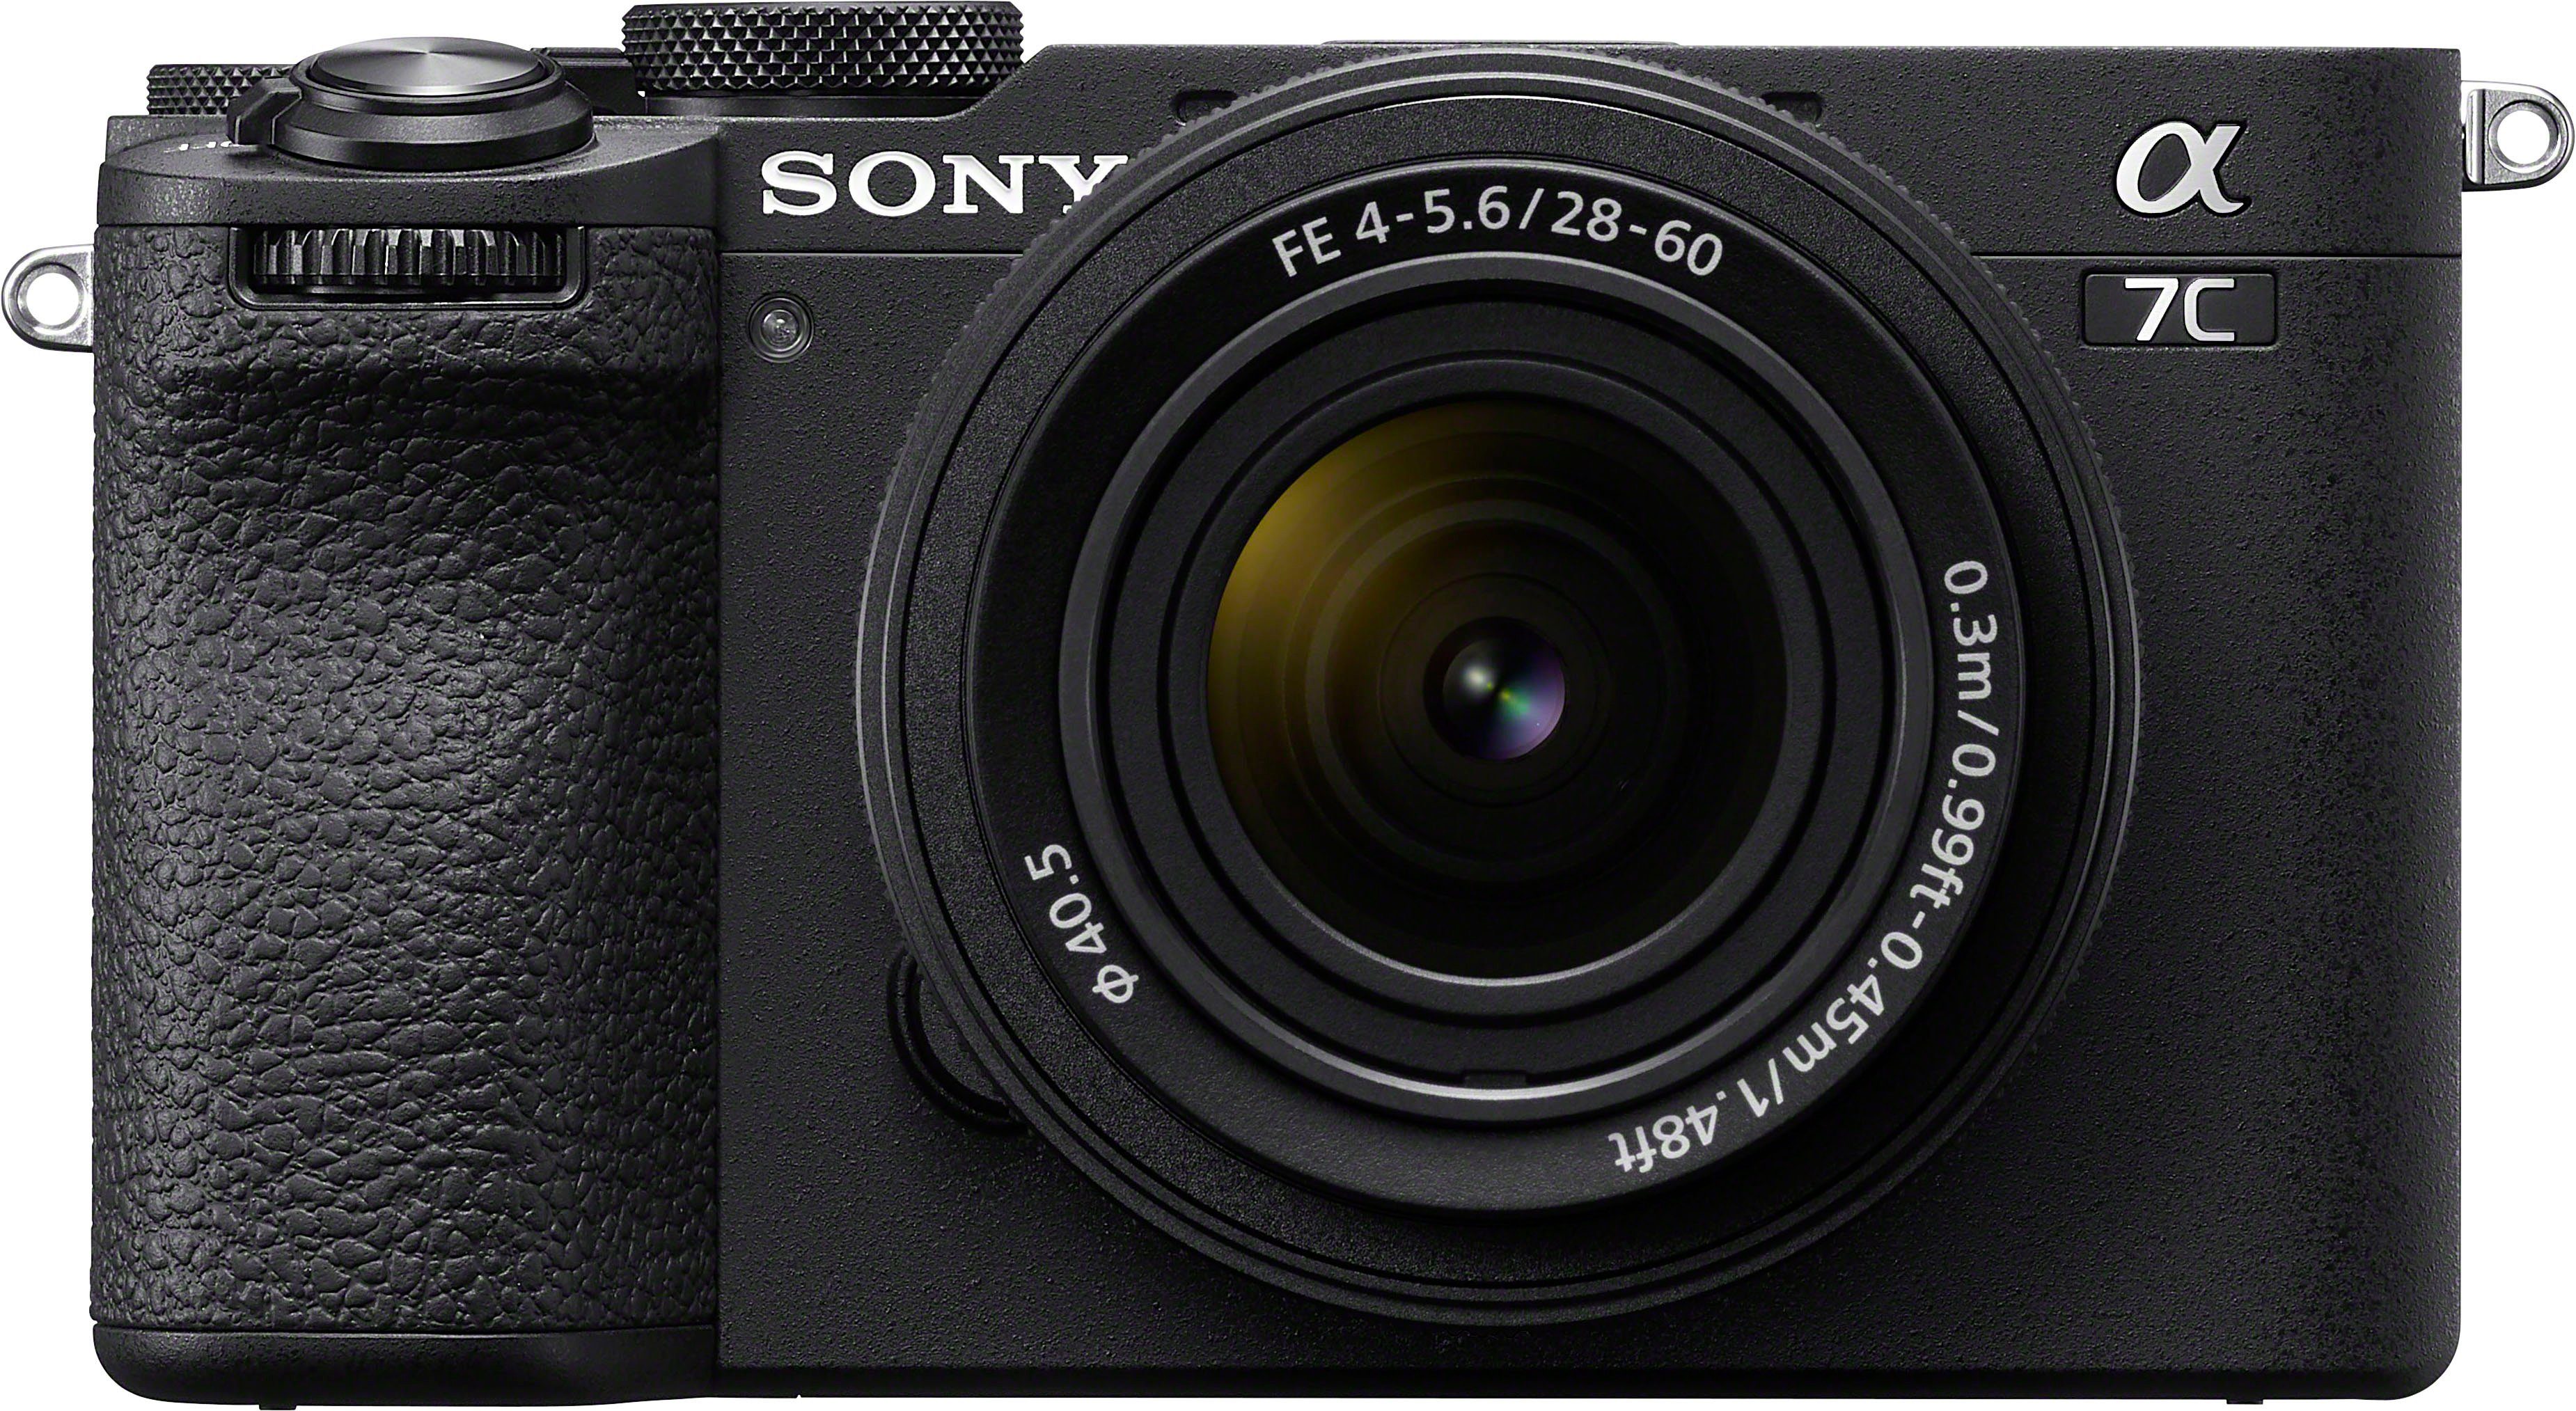 Sony Alpha 7C II Systemkamera (FE 28-60mm f4-5.6, 33 MP, Bluetooth, WLAN),  OLED-Sucher mit 2.36 Mio. Punkten und 0.7x Vergrößerung